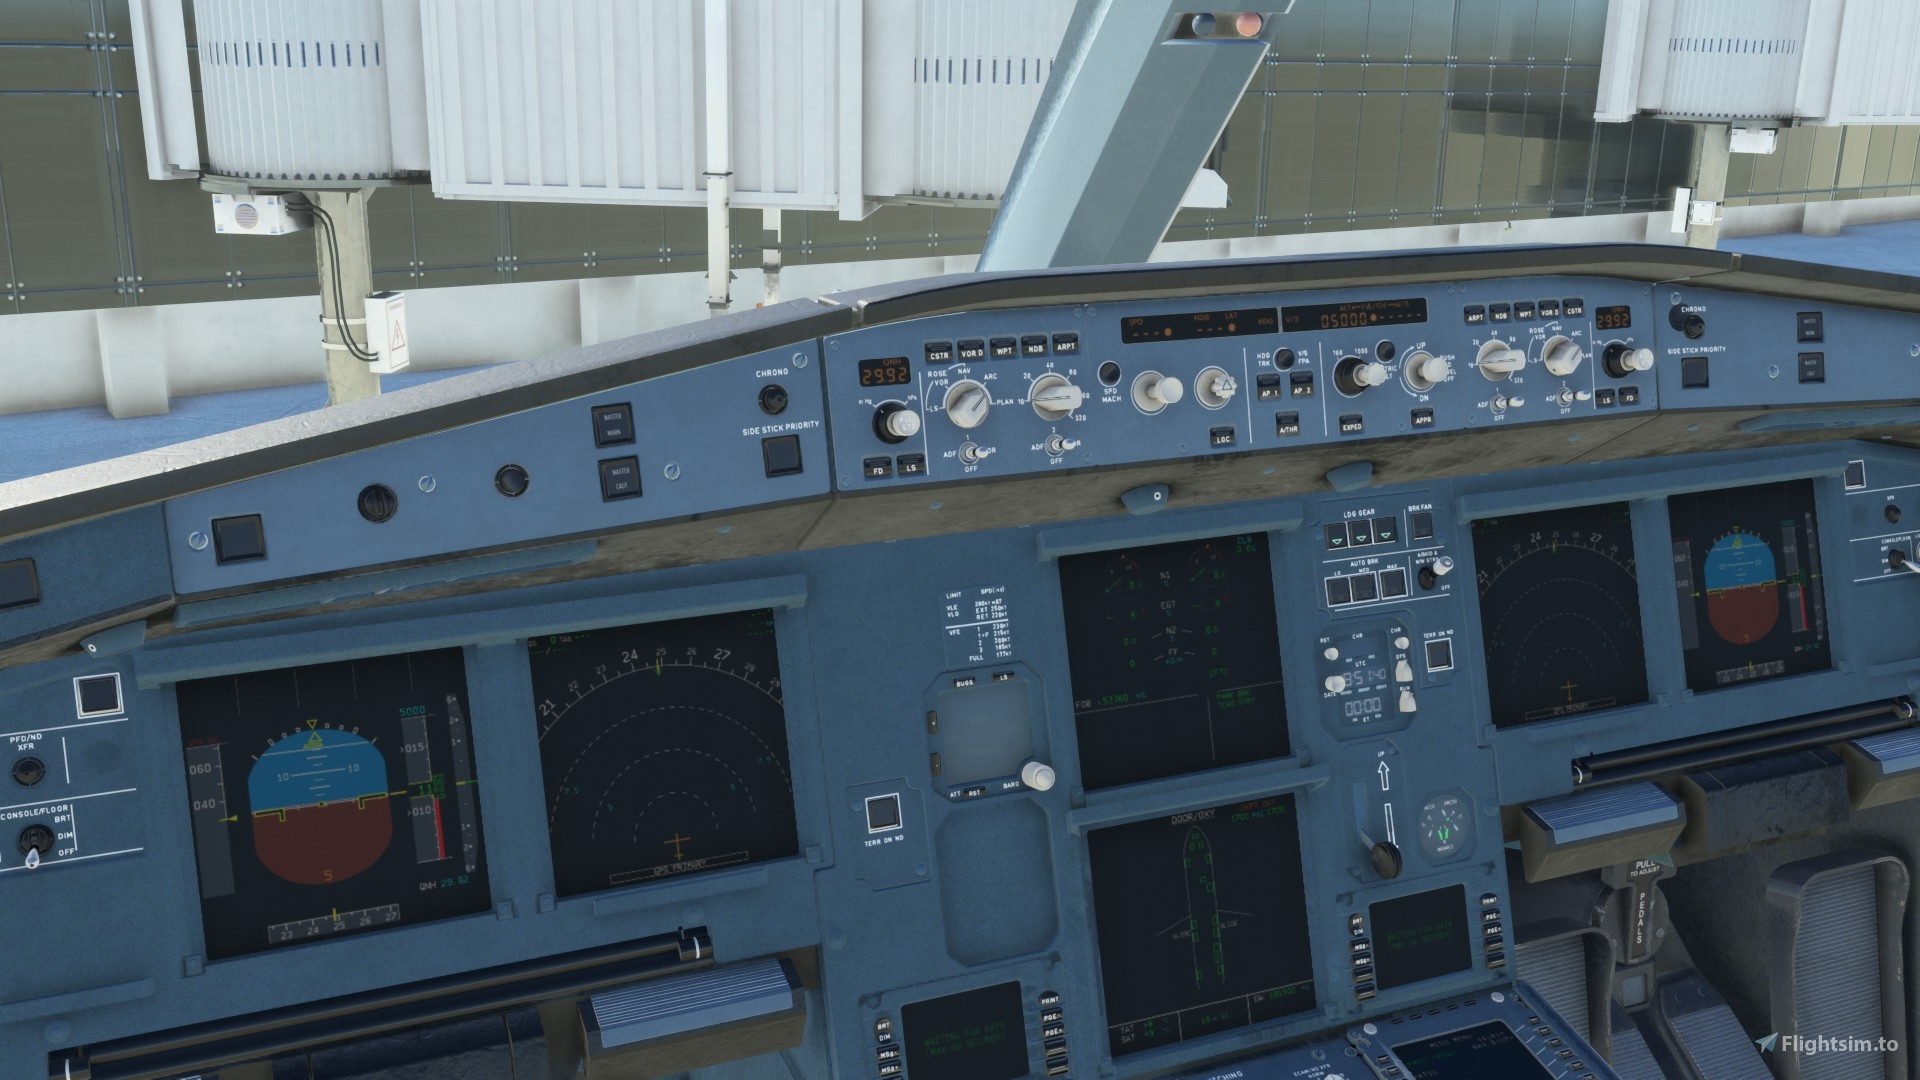 airbus cockpit seat